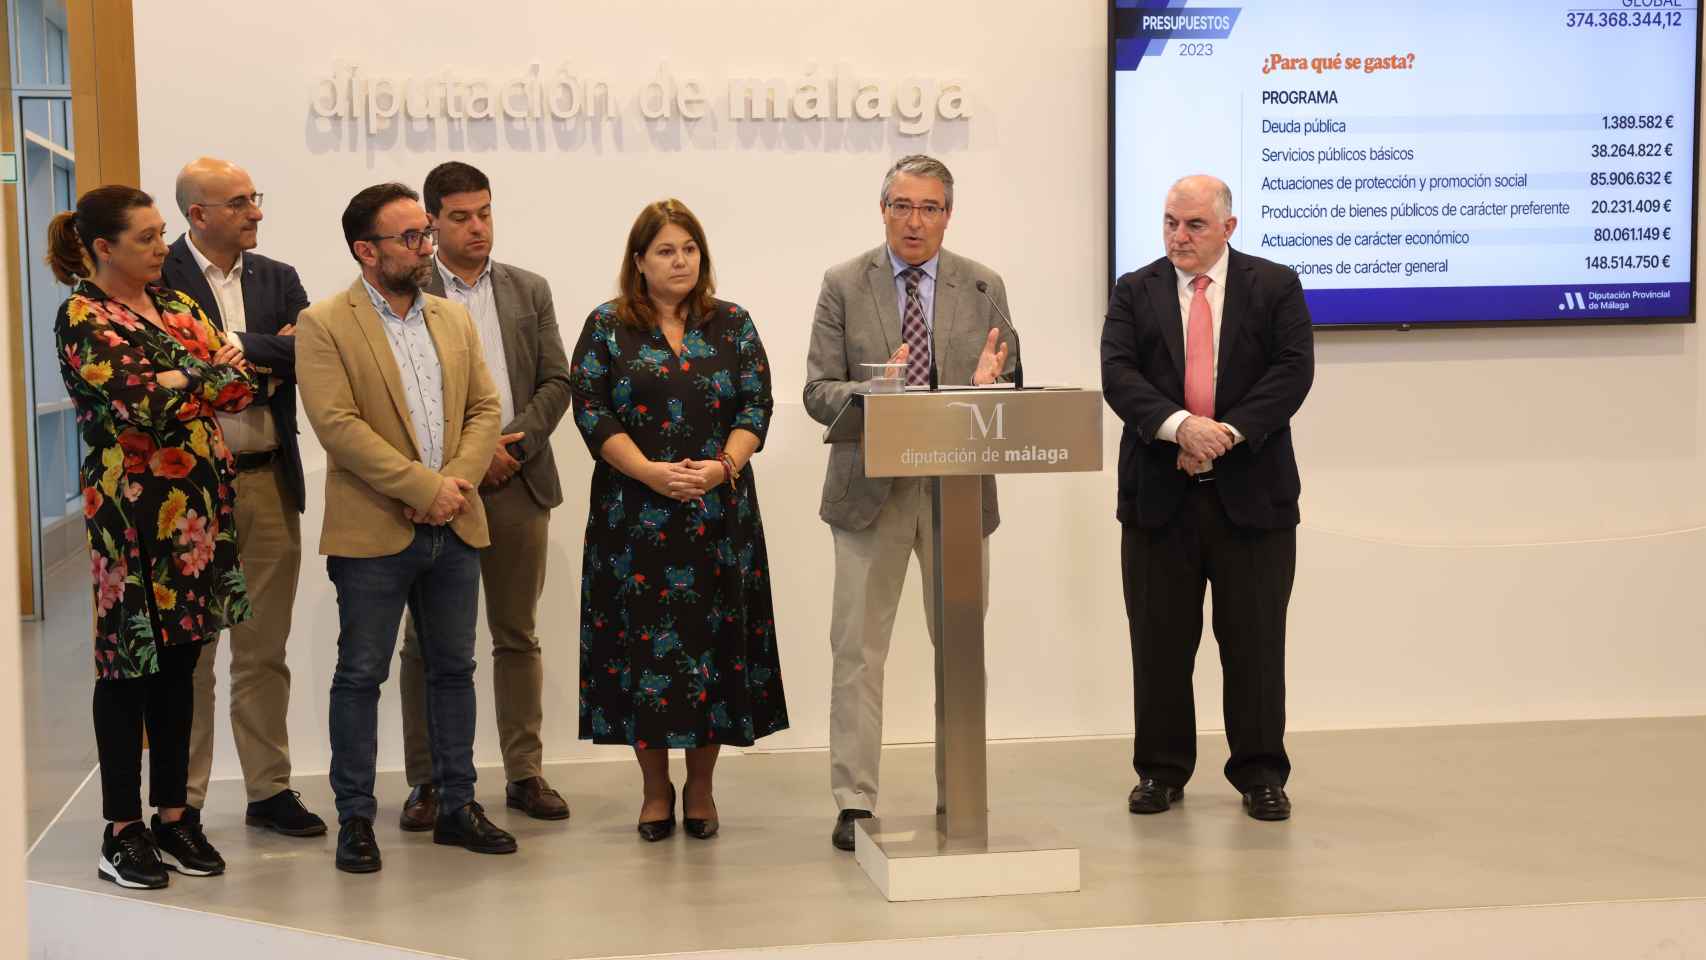 La presentación de los Presupuestos de la Diputación de Málaga para 2023.